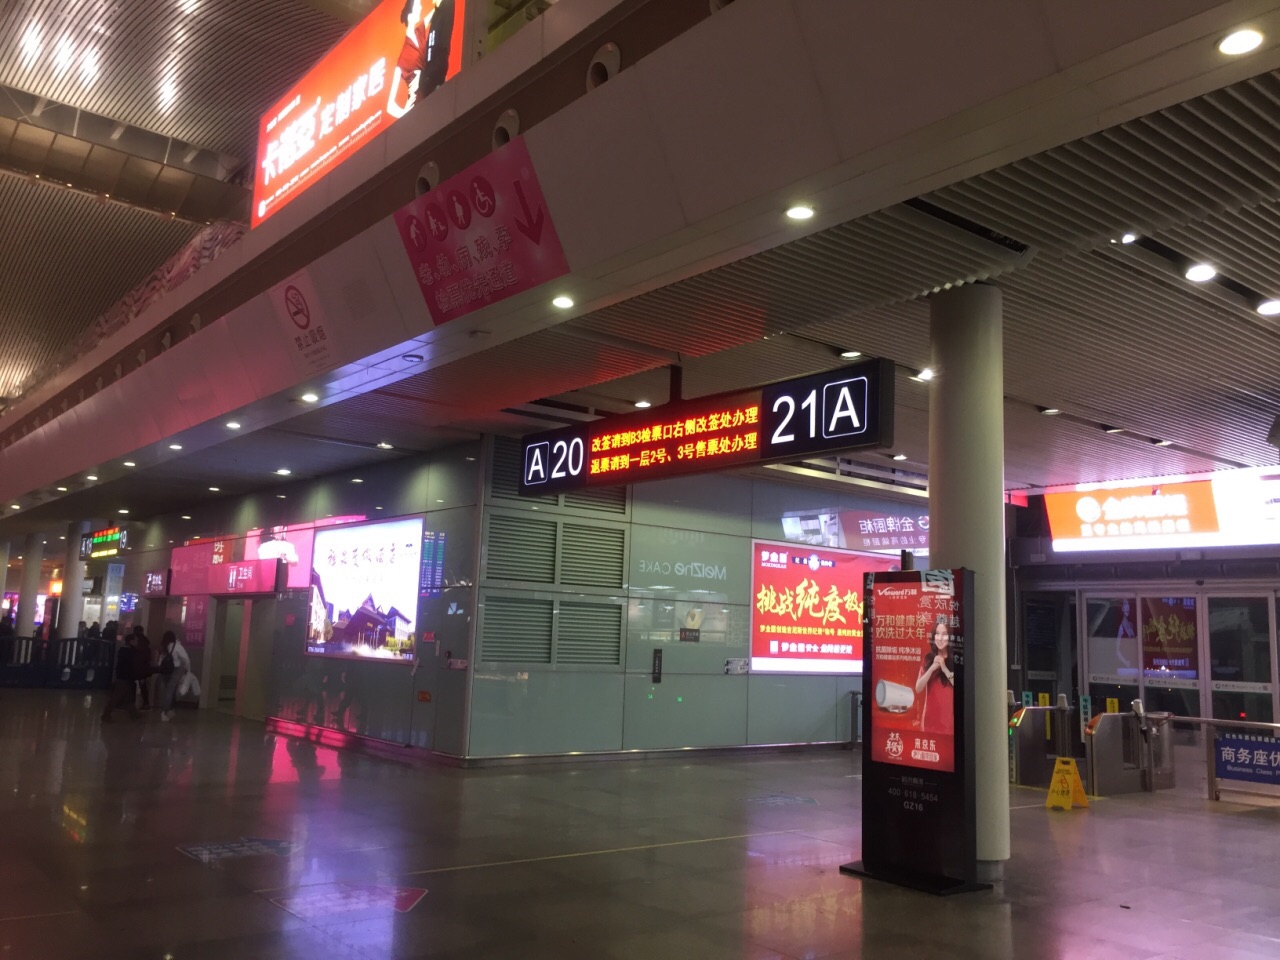 第一次去广州南站,去了才知道原来规模是那么宏大,里面有众多的检票口